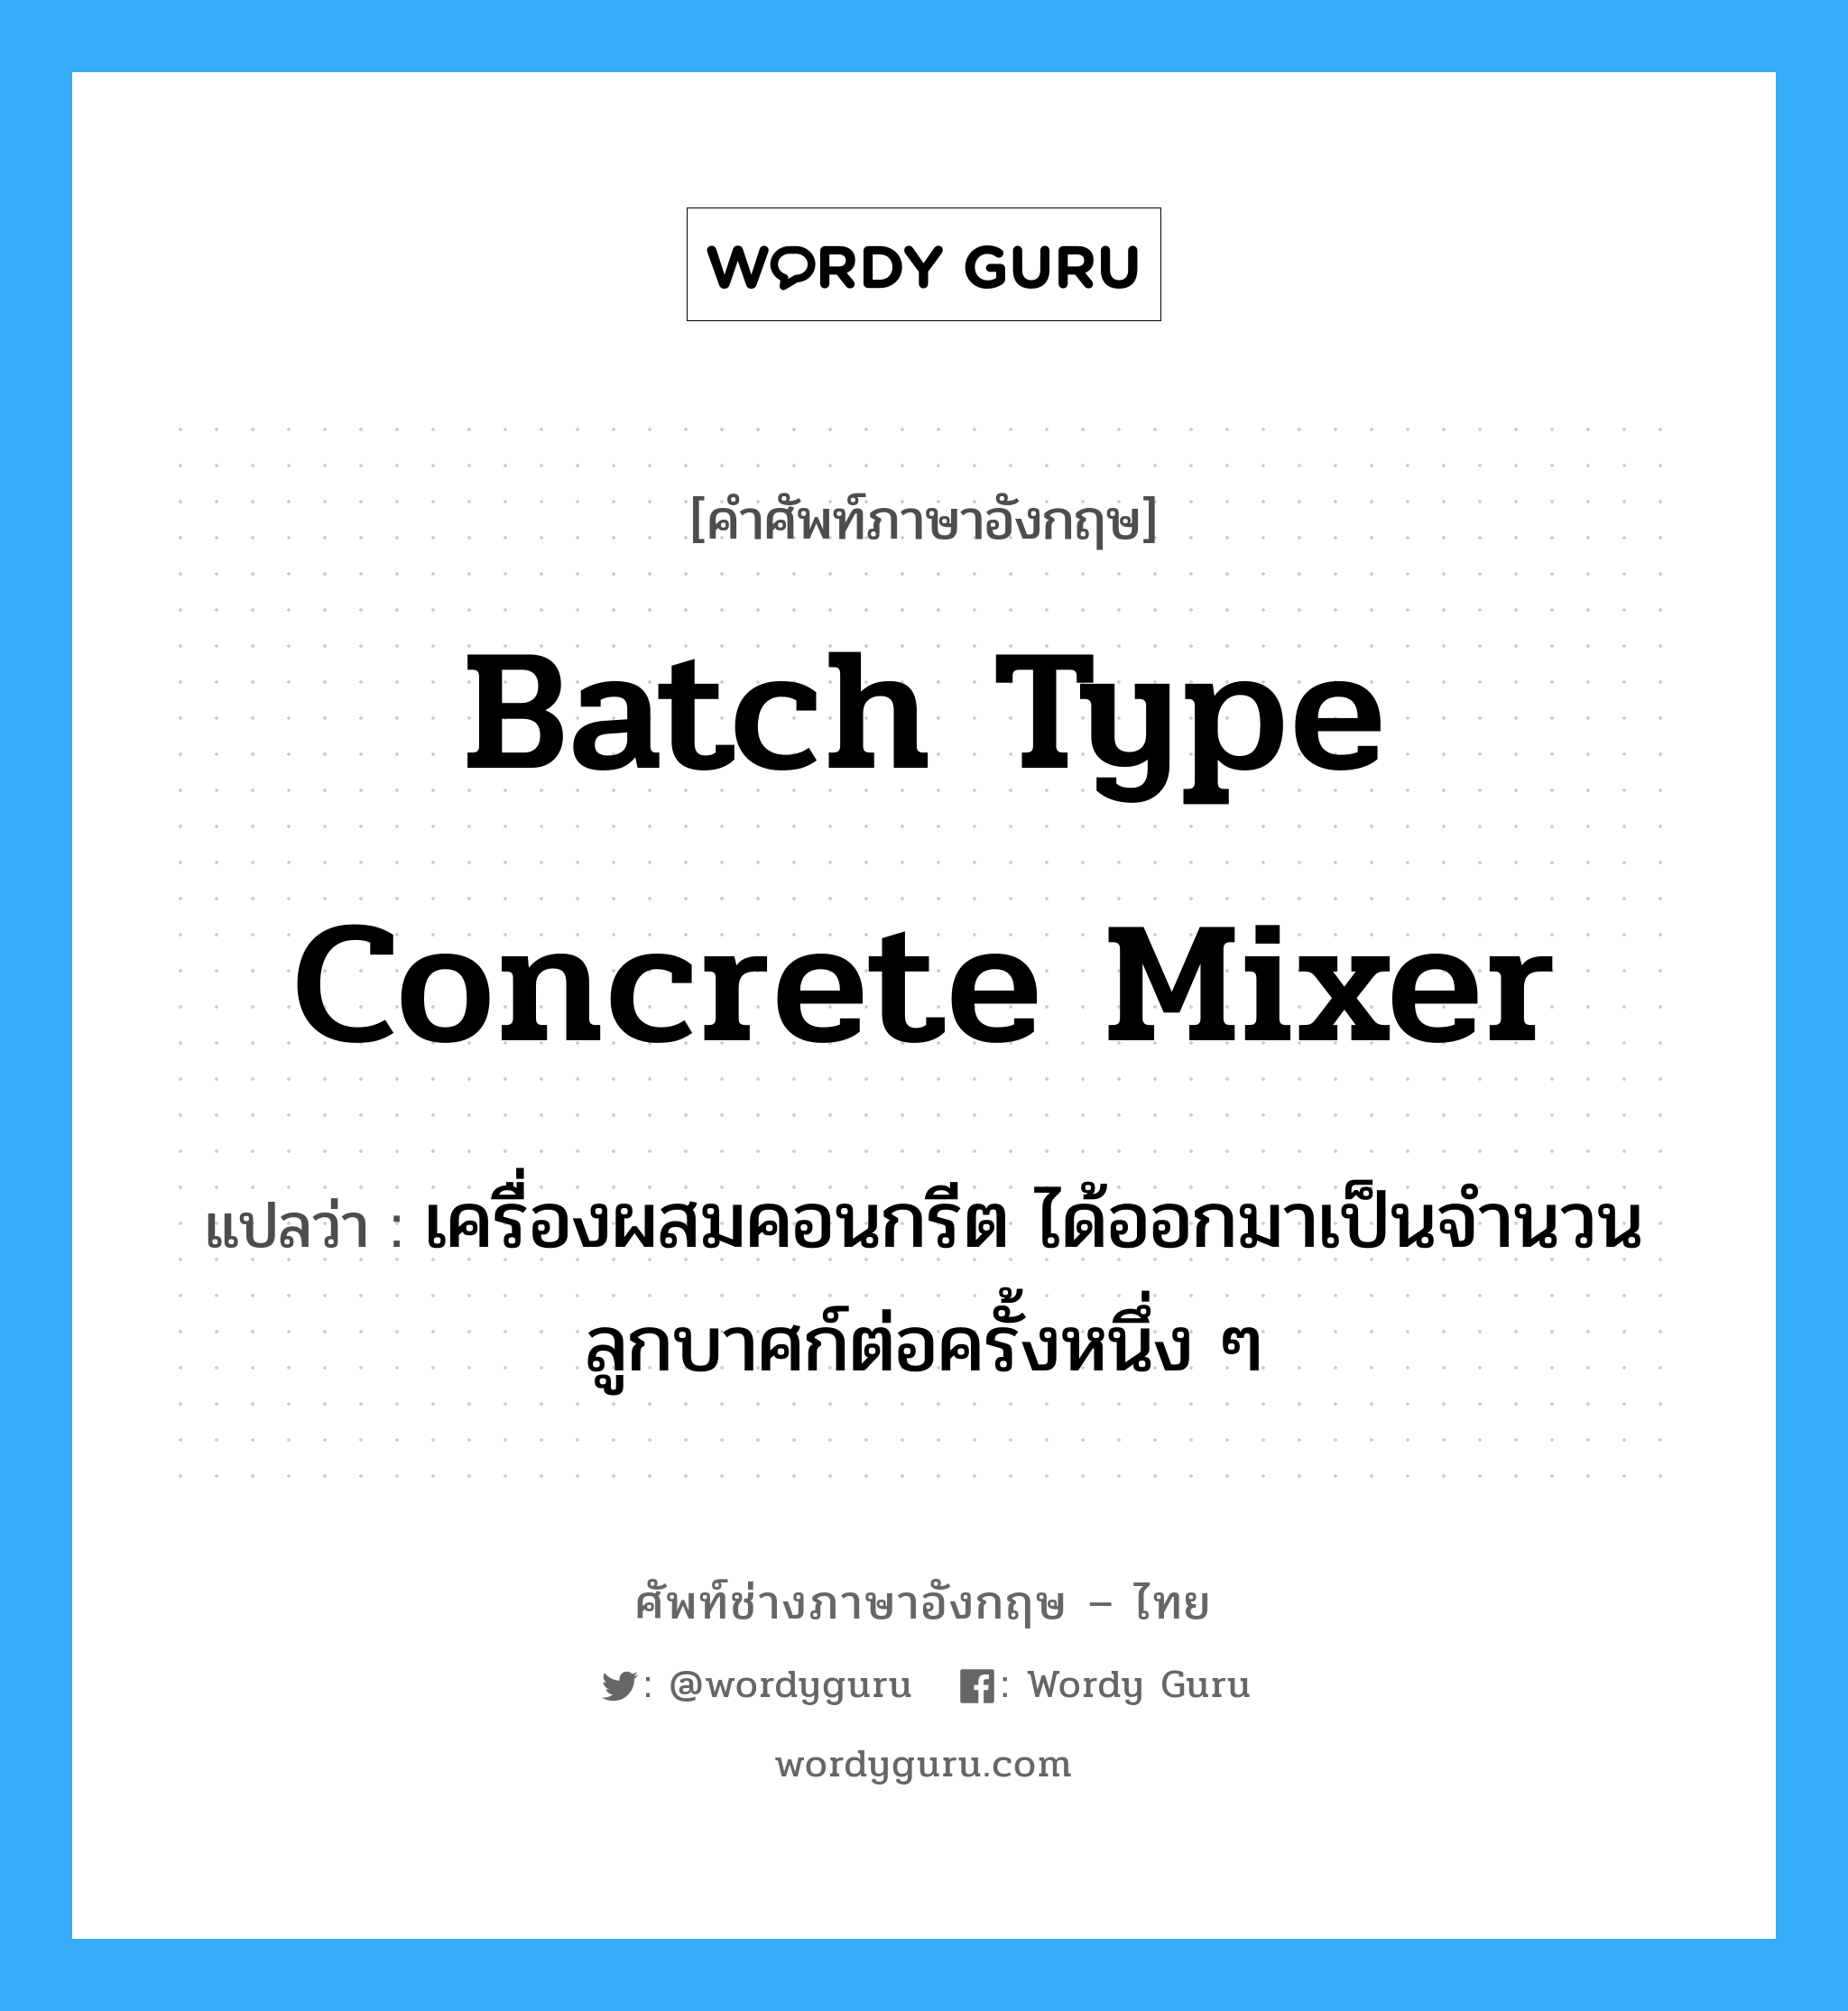 batch type concrete mixer แปลว่า?, คำศัพท์ช่างภาษาอังกฤษ - ไทย batch type concrete mixer คำศัพท์ภาษาอังกฤษ batch type concrete mixer แปลว่า เครื่องผสมคอนกรีต ได้ออกมาเป็นจำนวนลูกบาศก์ต่อครั้งหนึ่ง ๆ